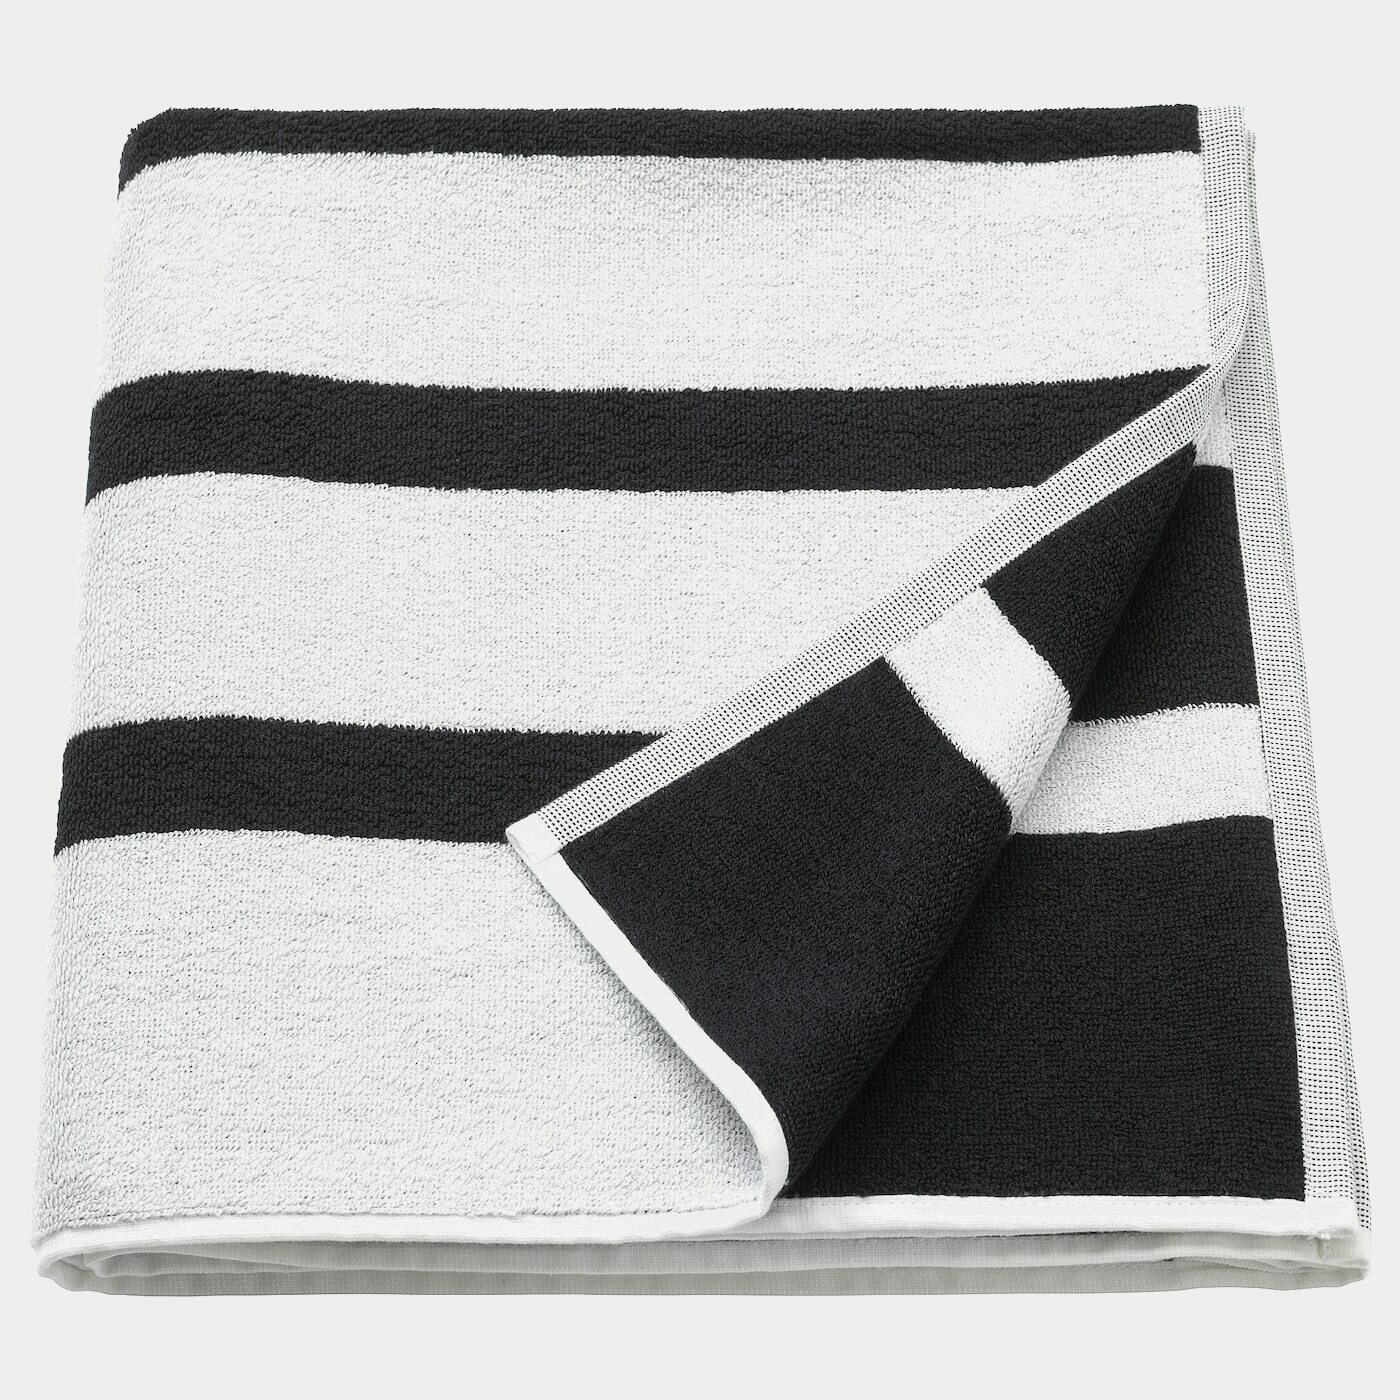 KINNEN Badetuch  - Handtücher - Textilien Ideen für dein Zuhause von Home Trends. Textilien Trends von Social Media Influencer für dein Skandi Zuhause.